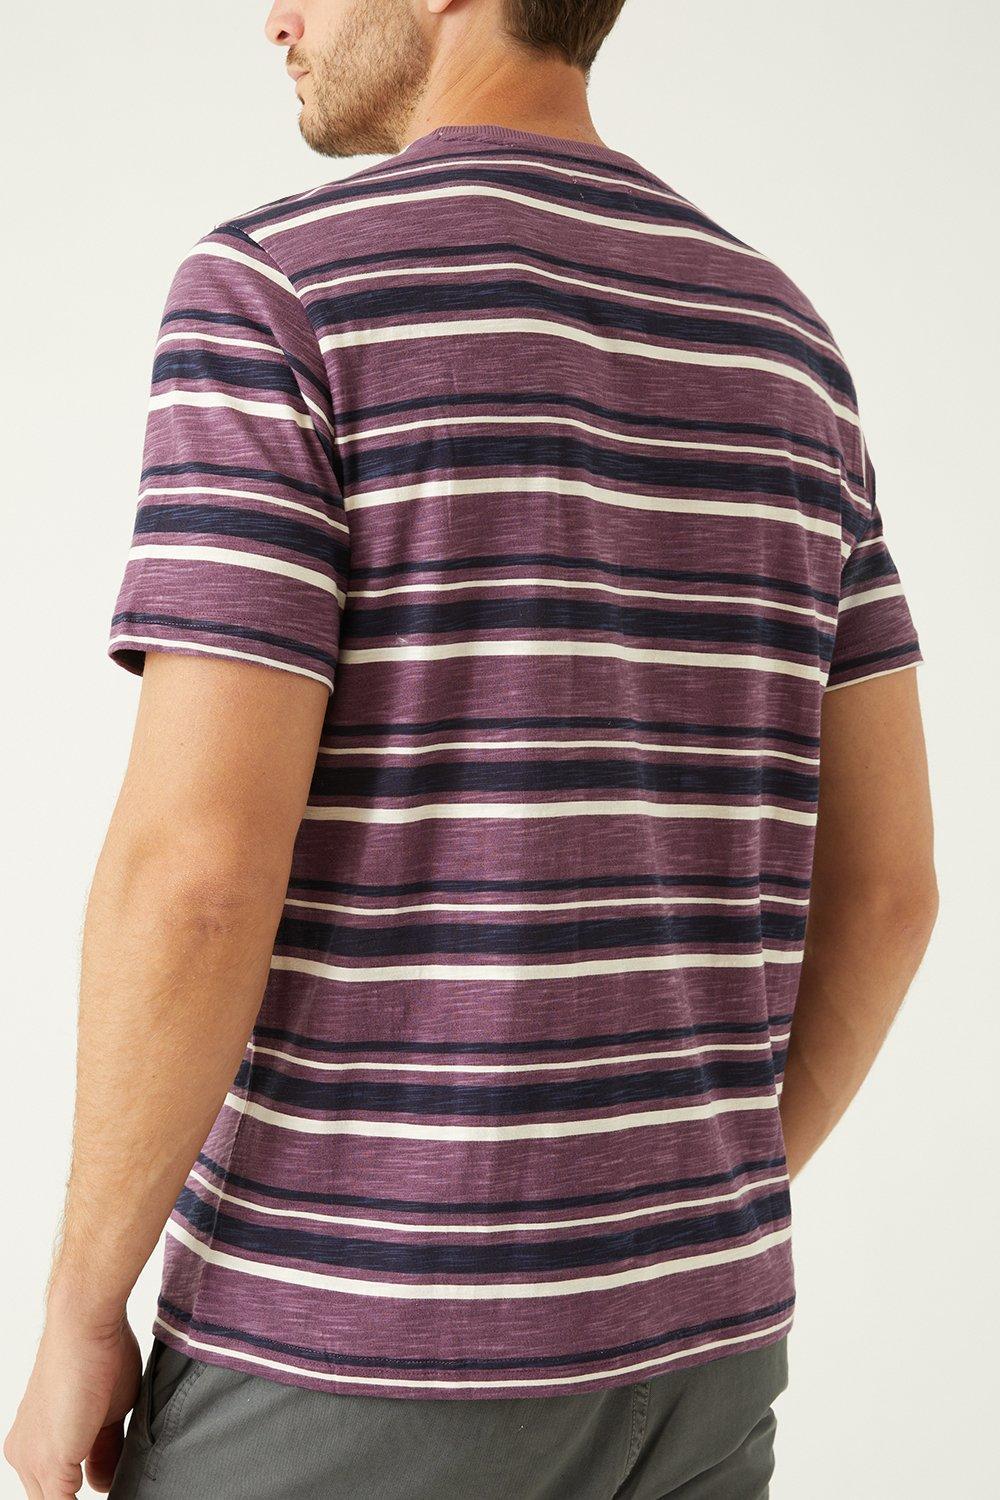 fioletowy klasyczny t-shirt paski kontrast